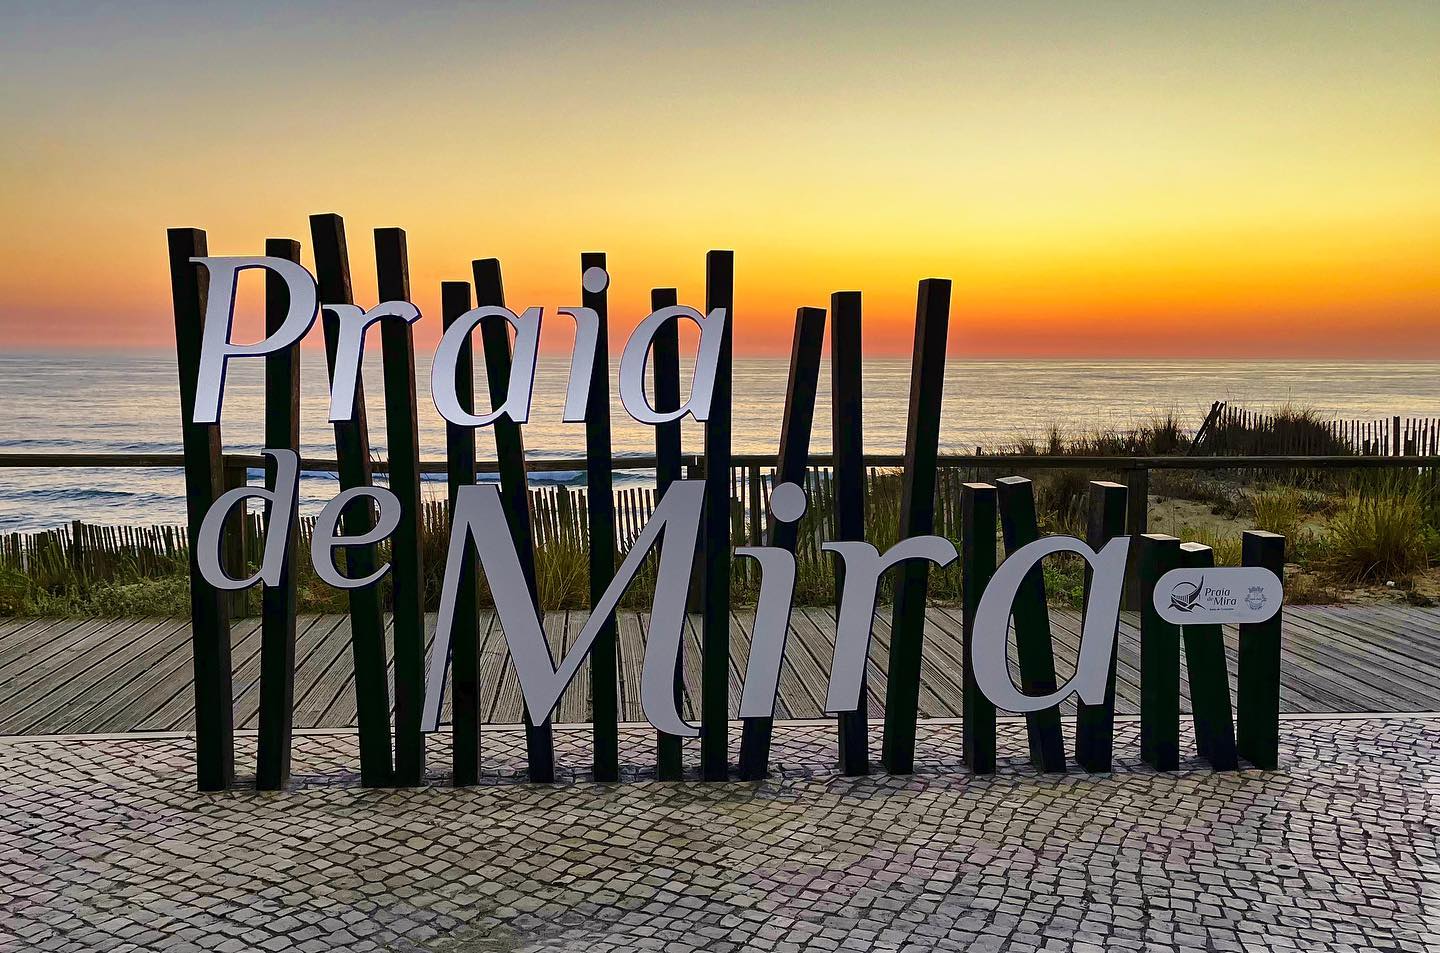 Praia de Mira sign at sunset.